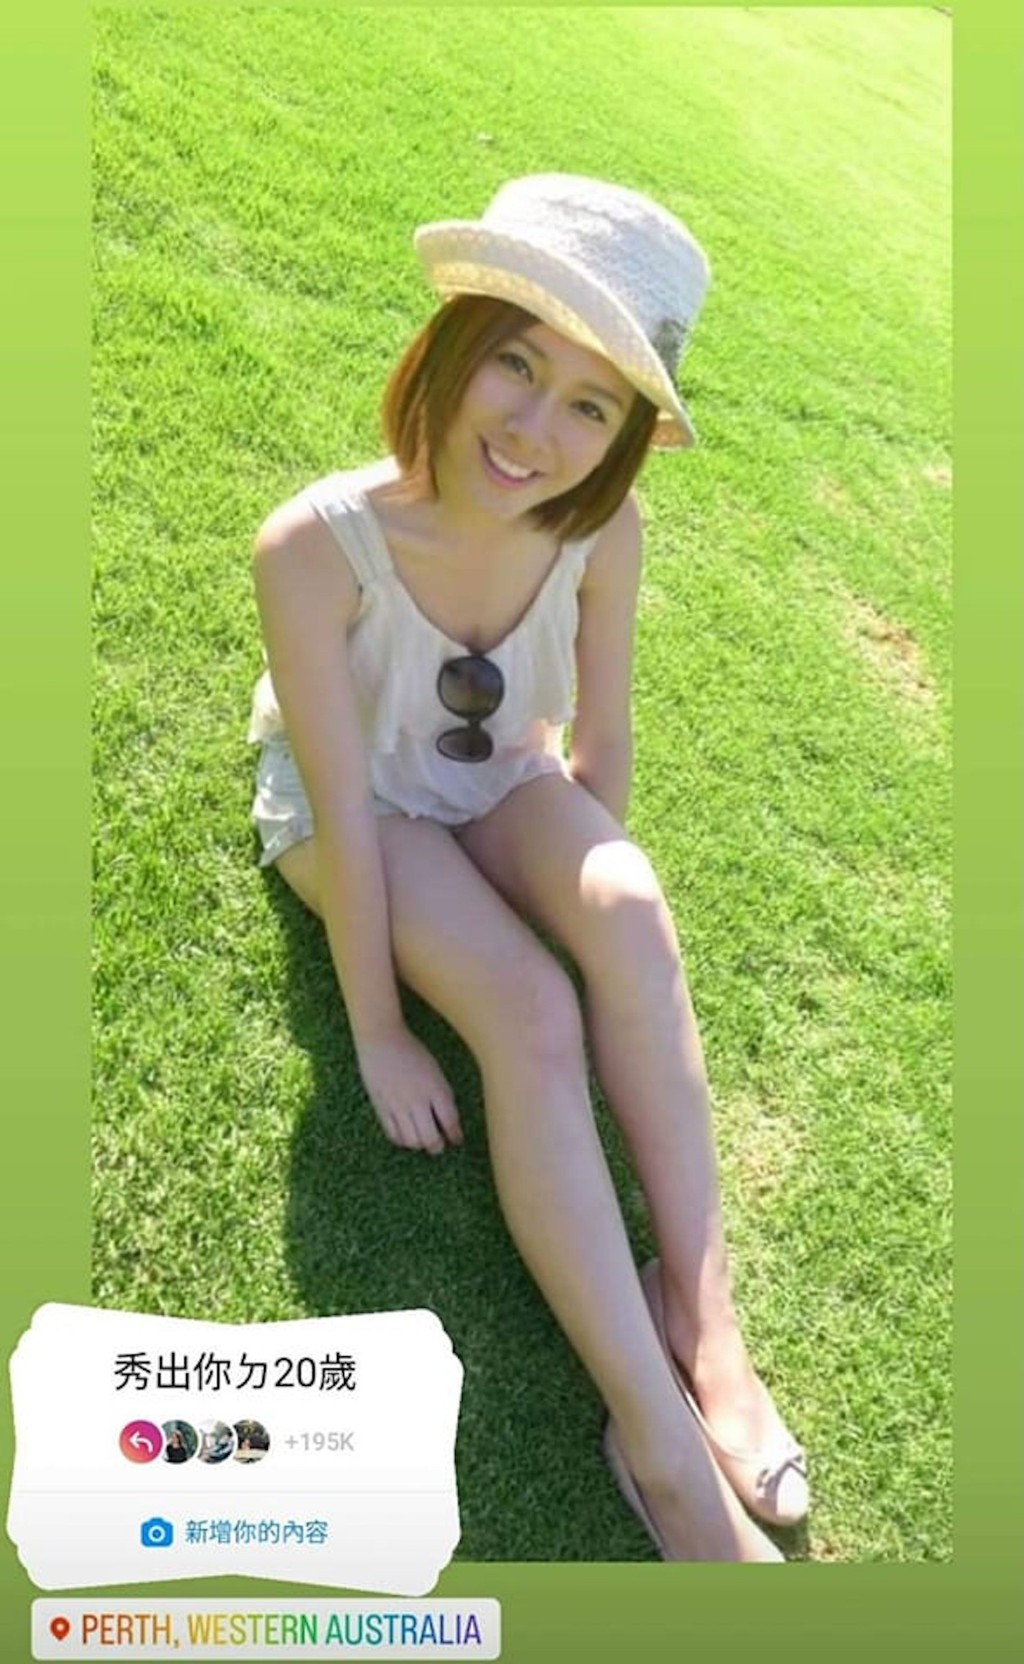 梁凯宁早前晒出20岁于草地上晒长腿的照片。